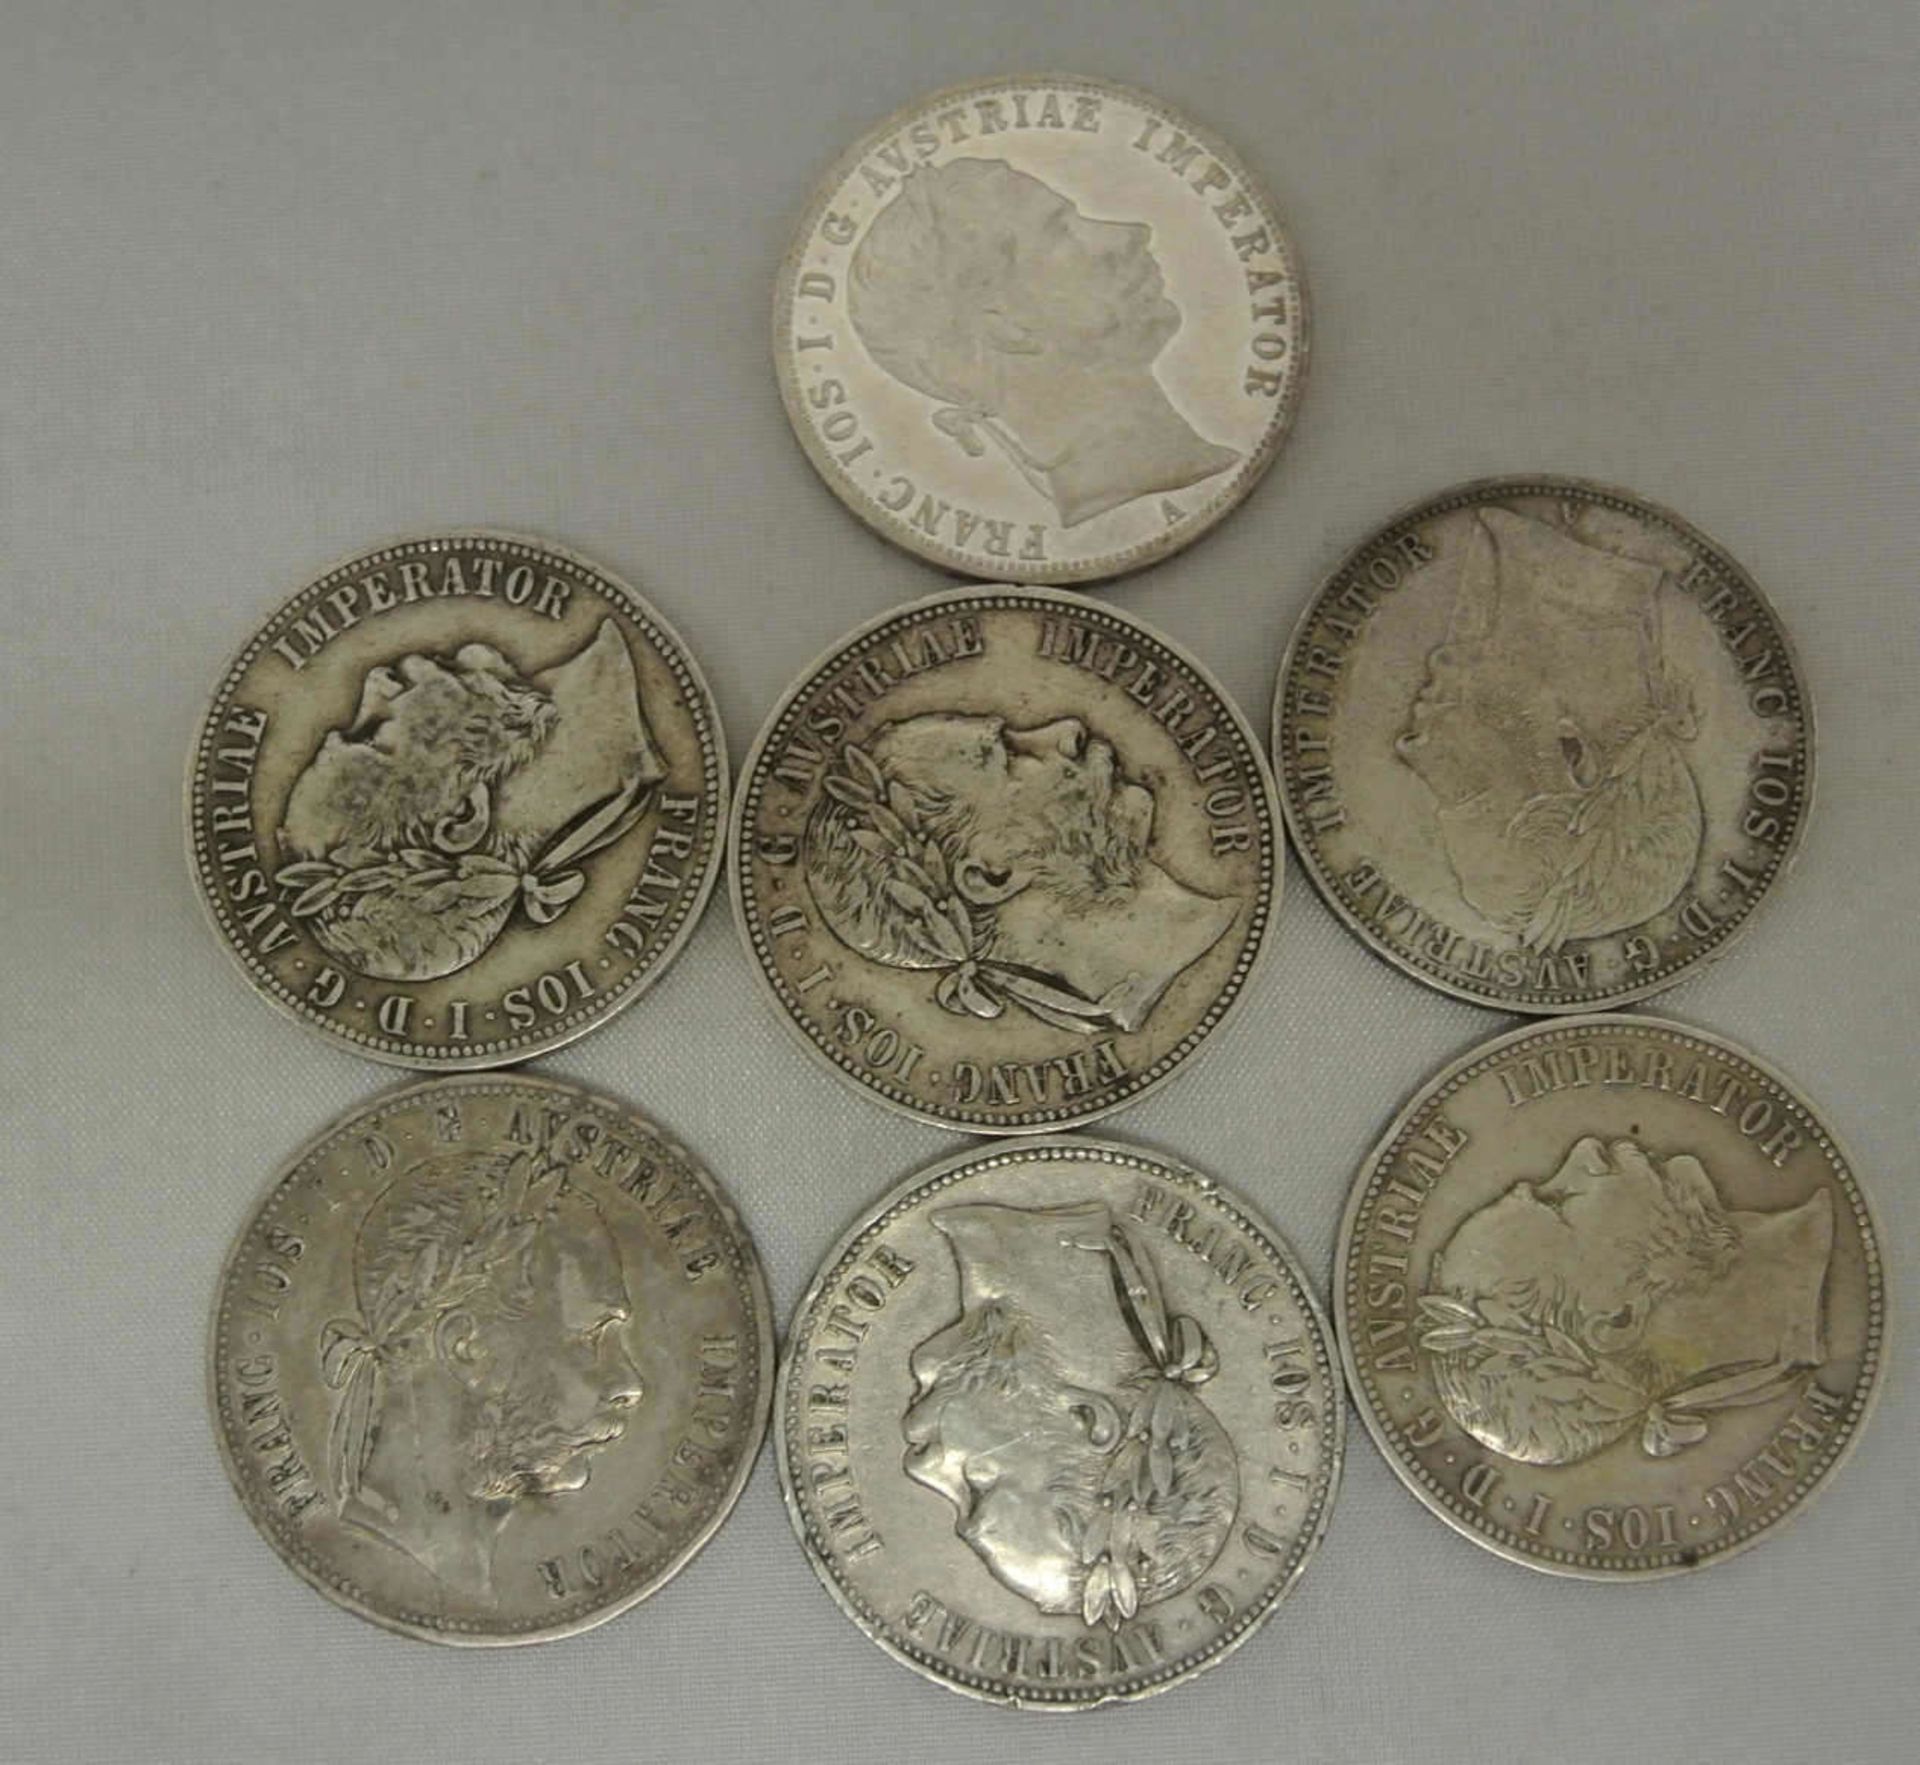 Lot Österreich Münzen, 7x 1 Florin/Gulden, dabei 1x 1859, 1x 1860, 2x 1879, 1x 1883, 2x 1888. - Bild 2 aus 2